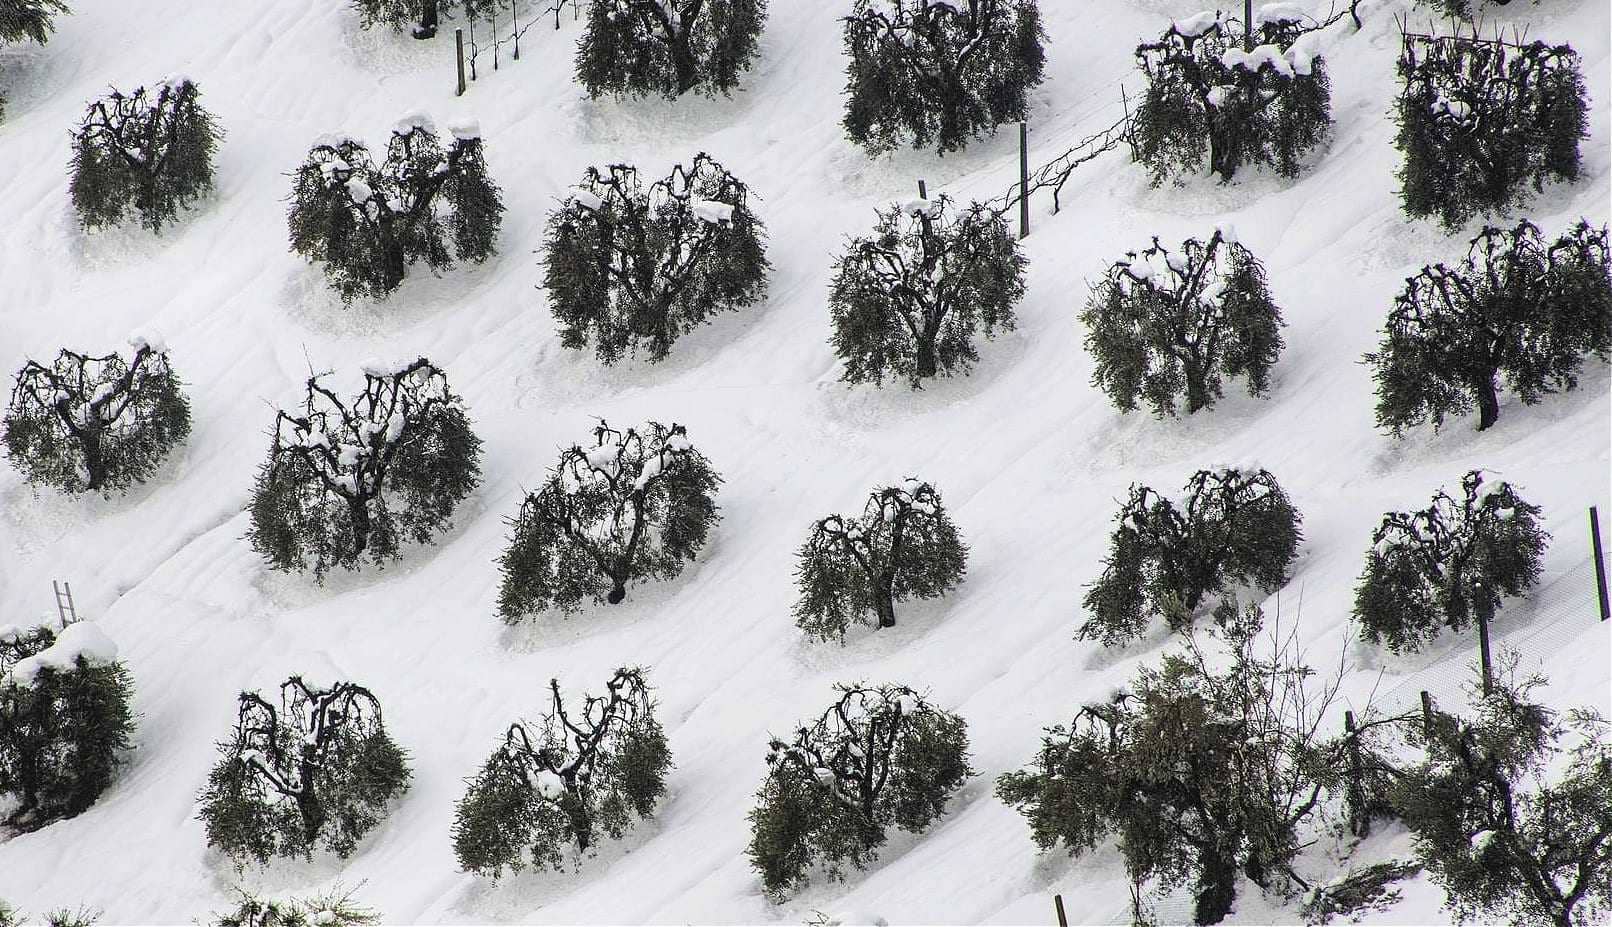 Европа-бизнес-Италия одобряет помощь для мельниц, пострадавших от снежной бури-2018, оливковое масло-время